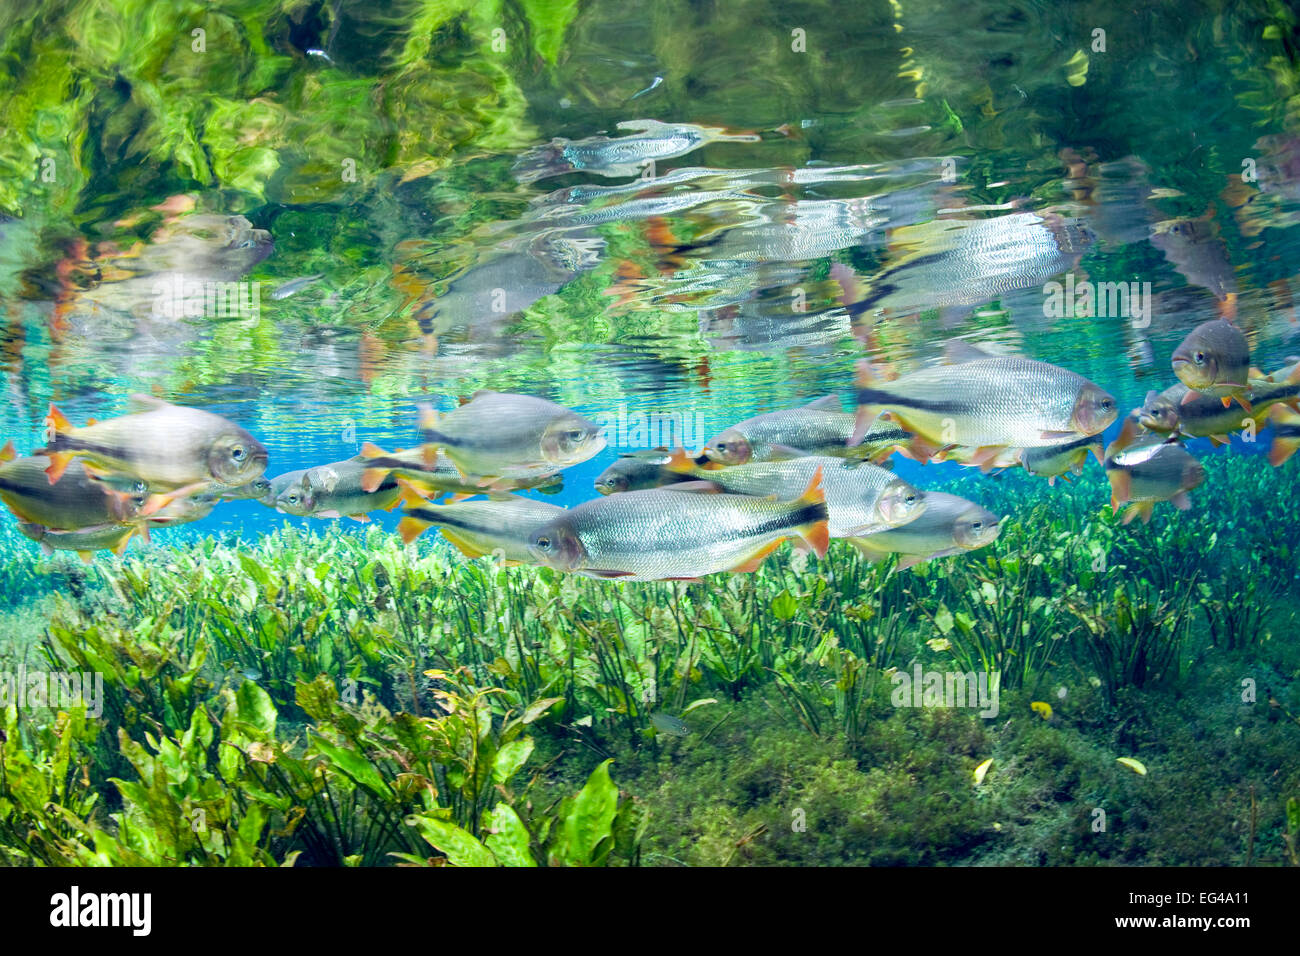 Piraputanga (Brycon hilarii) riflettendo sulla superficie dell'acqua Aqua¡Rio Bonito naturale del Mato Grosso do Sul in Brasile Foto Stock